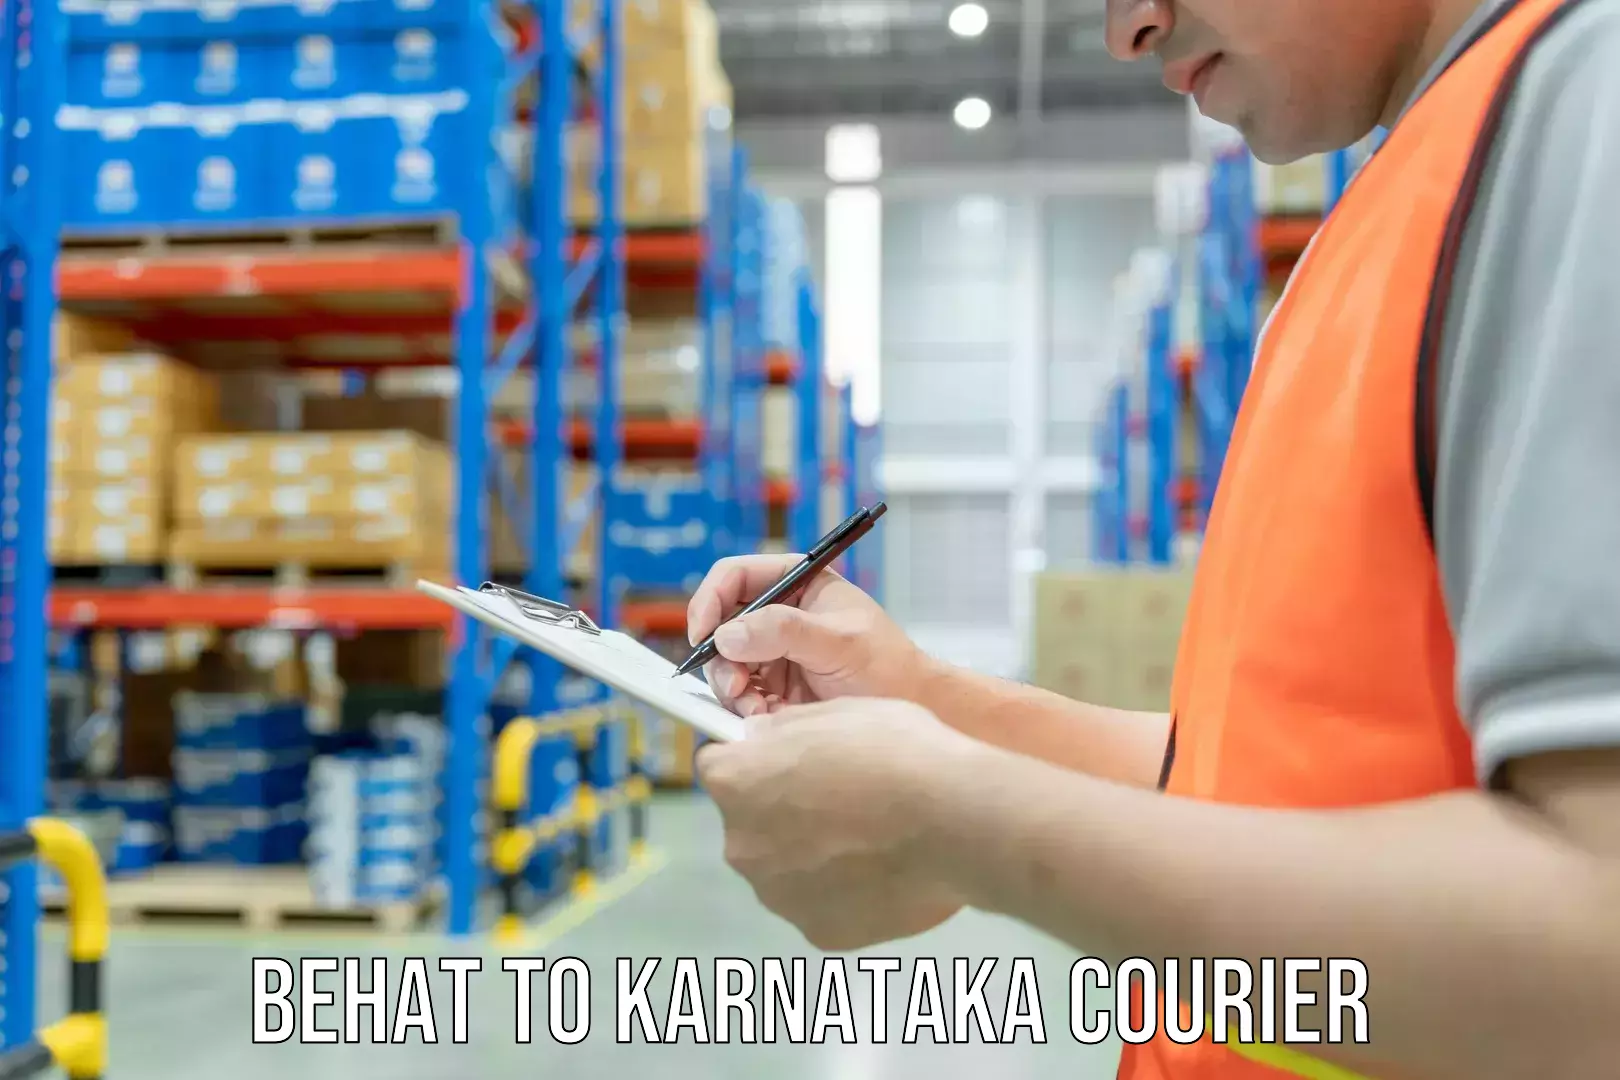 Supply chain efficiency Behat to Karnataka